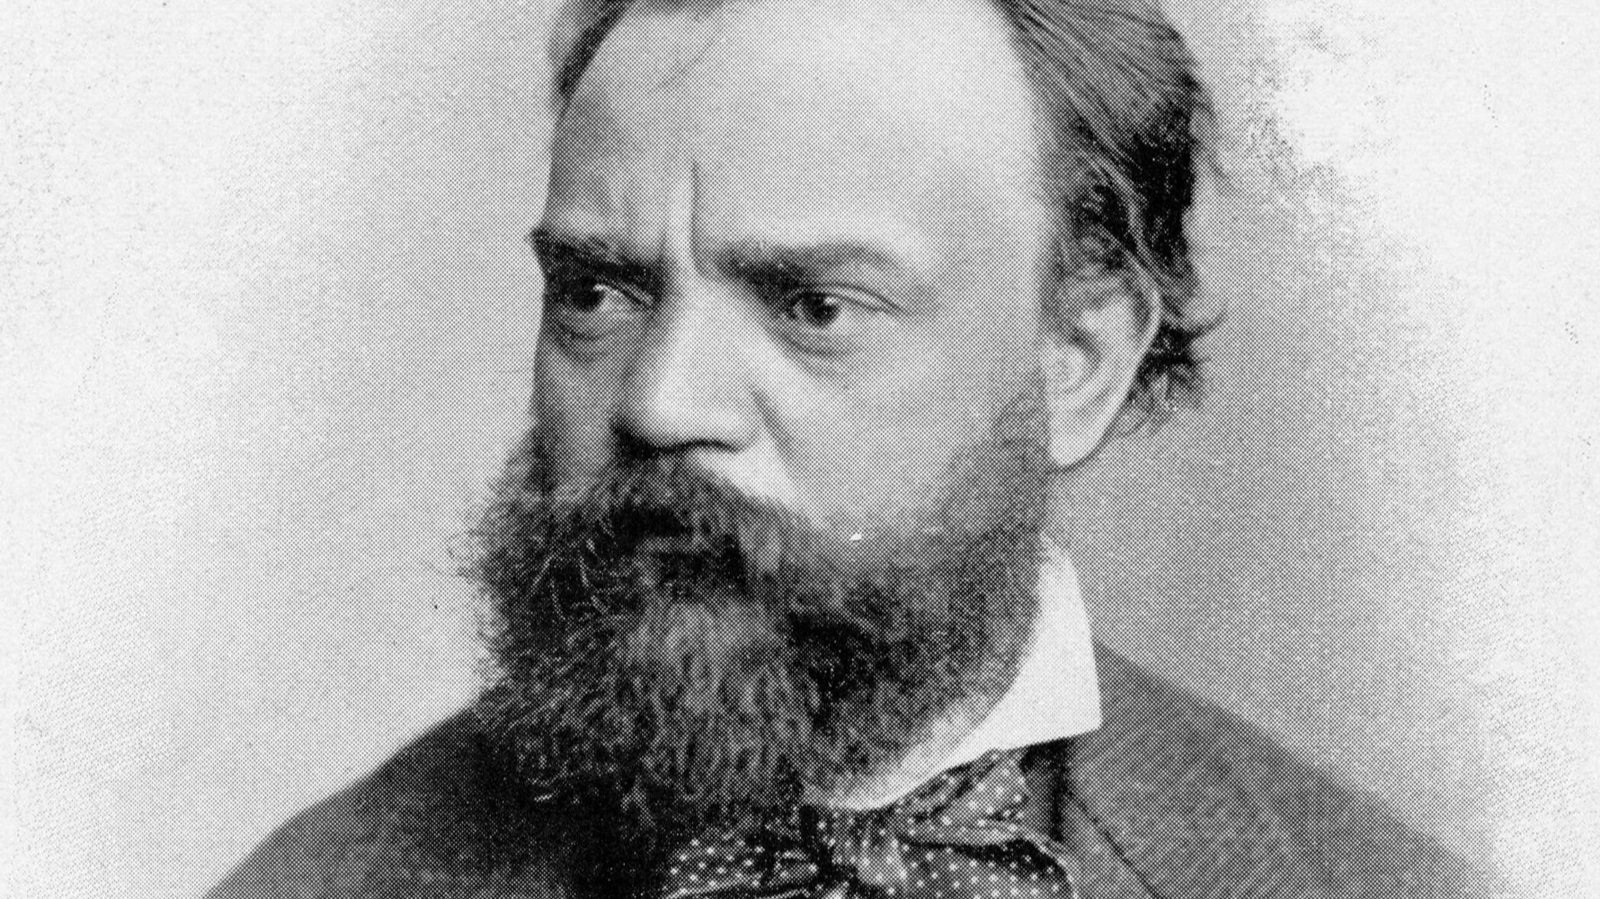 Antonín Dvorák in an early photograph